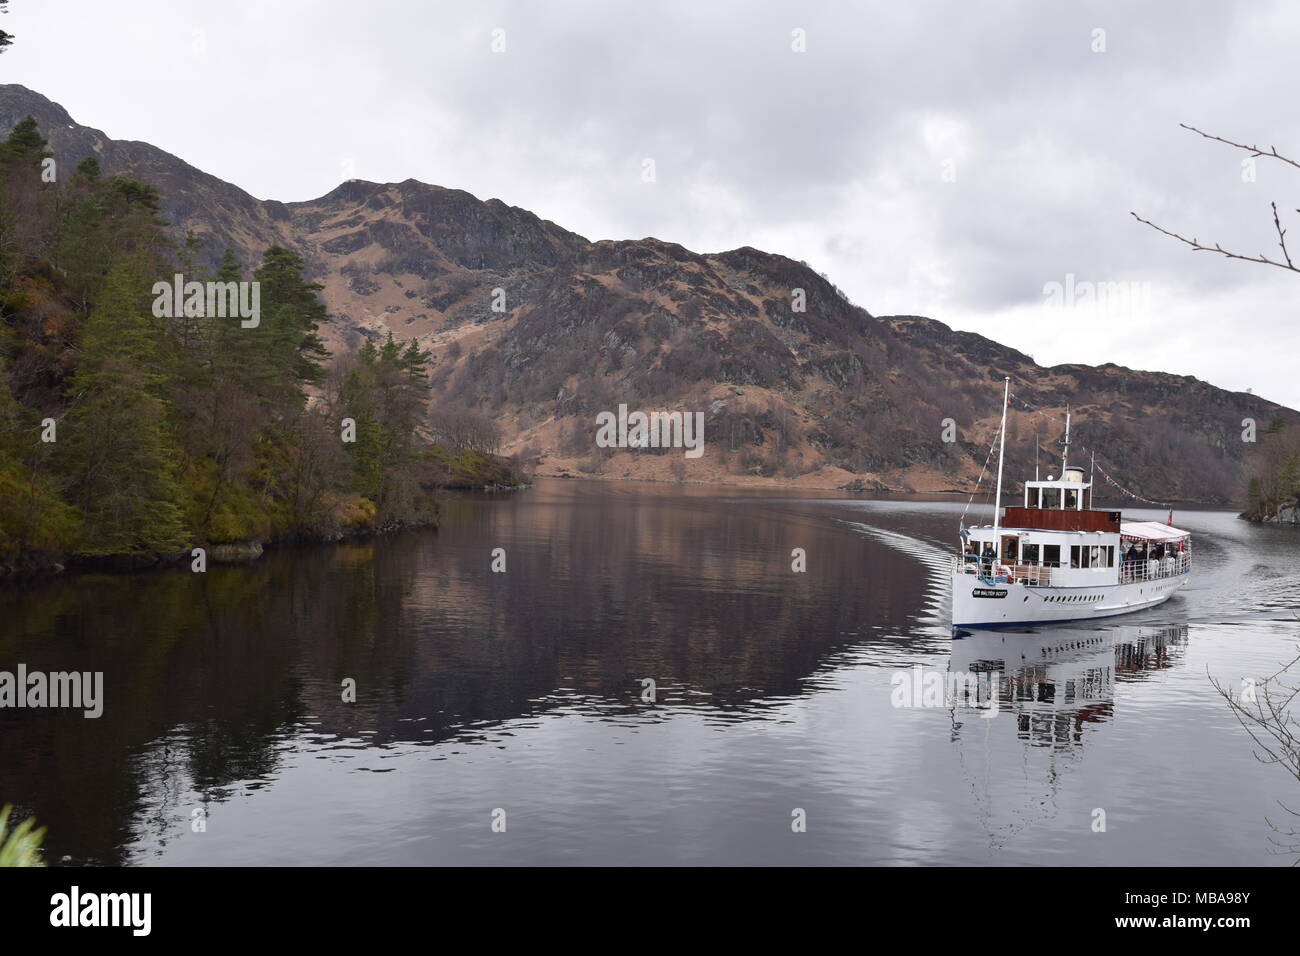 'Loch Katrine trossachs Hochland Schottlands' Trossachs 'Hochland' cotland teamship' 'Sir Walter Scott'' Die Dame vom See'' Beinn chabbair'. Stockfoto